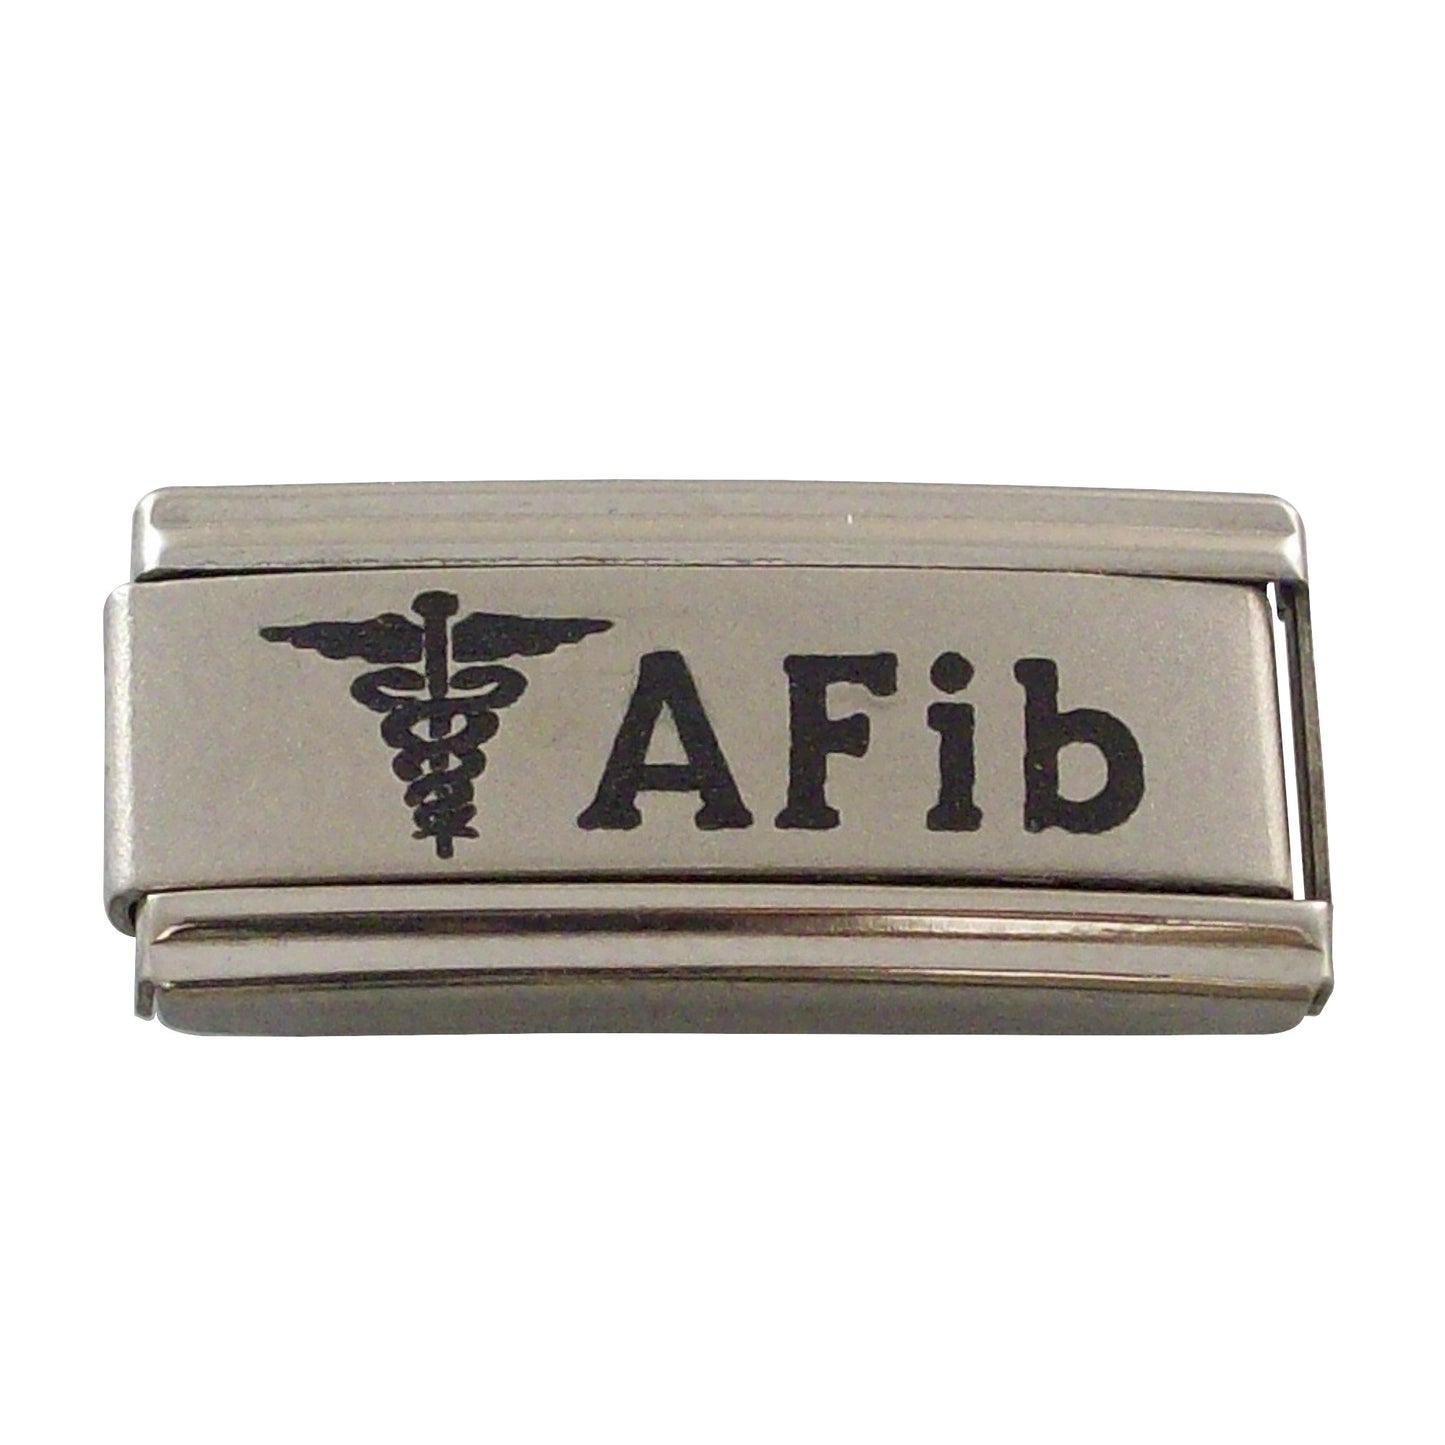 Gadow Jewelry AFib Charm for Italian Charm Bracelet Atrial Fibrillation